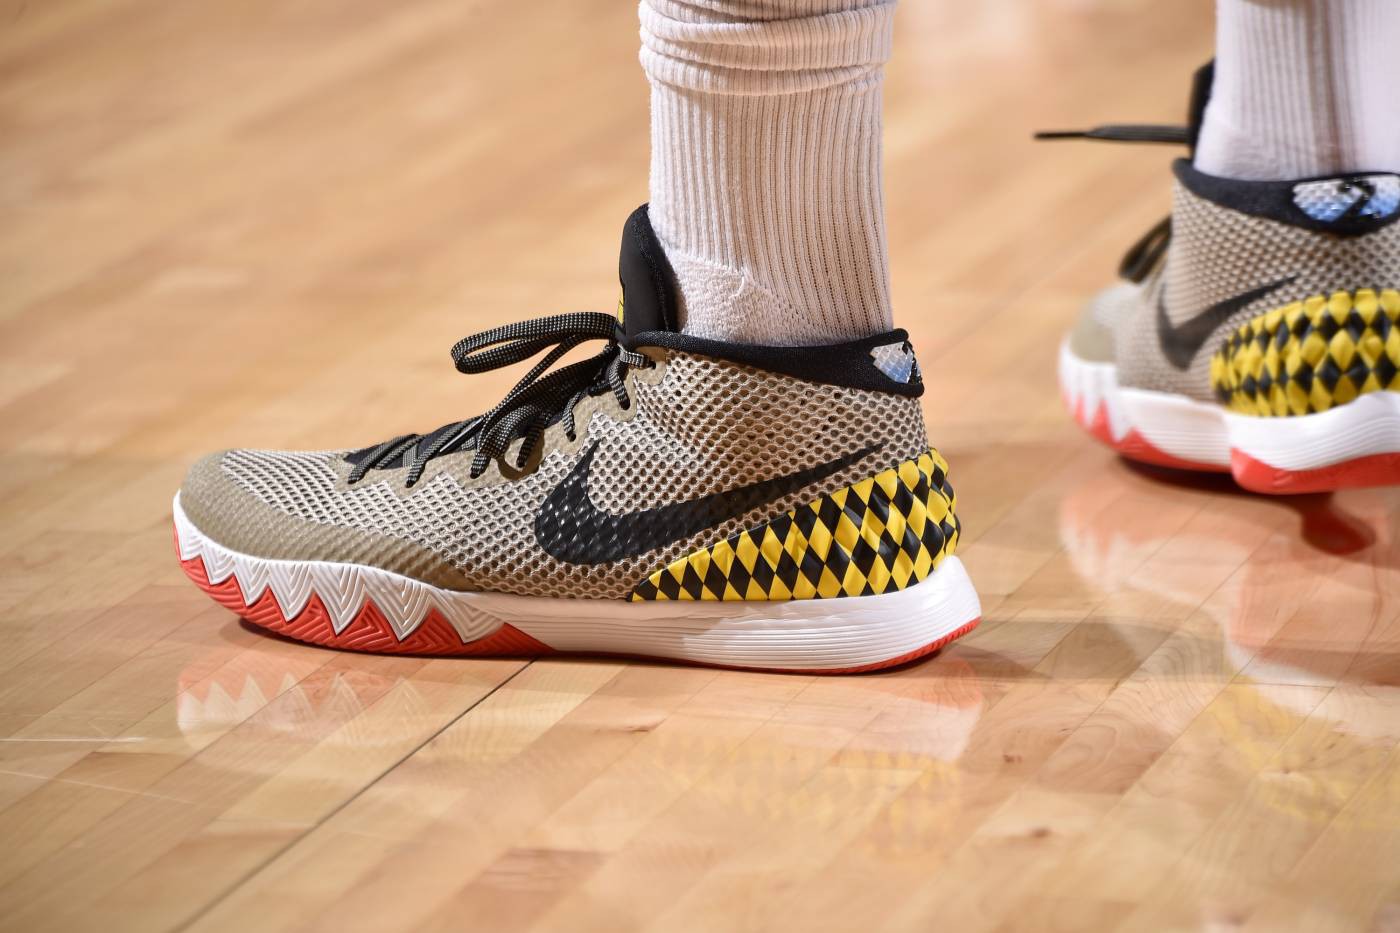 Chi tiết và đầy đủ các mẫu giày khủng của Thánh giày P.J. Tucker đã mang tại NBA Playoffs 2018 - Ảnh 13.